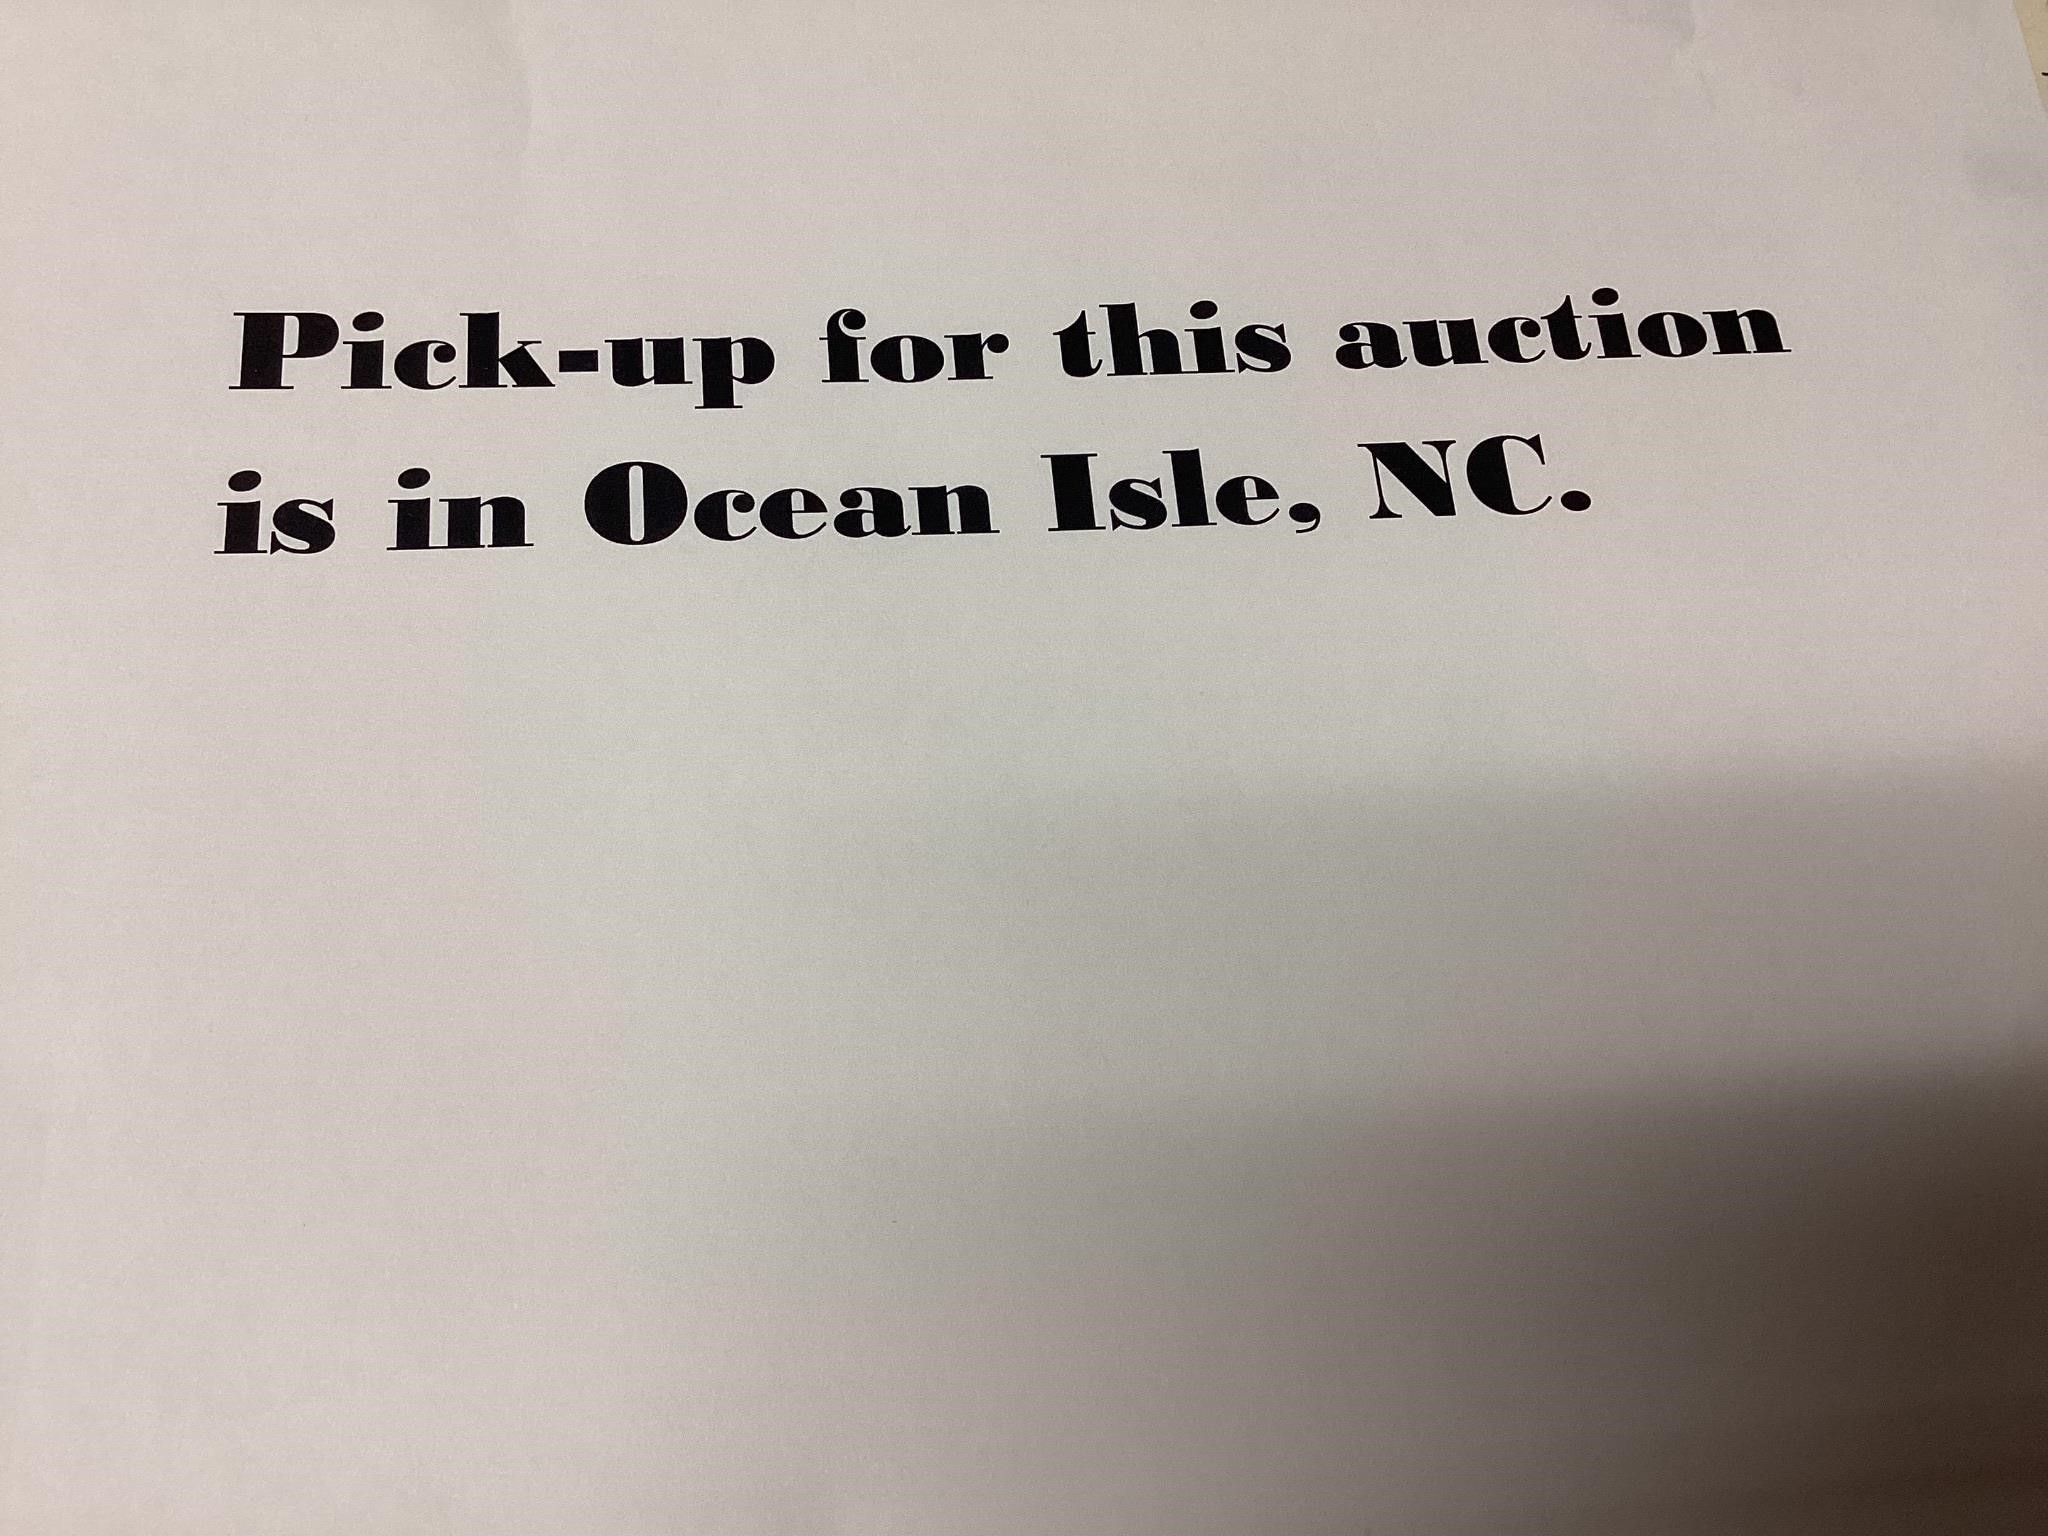 Auction notice